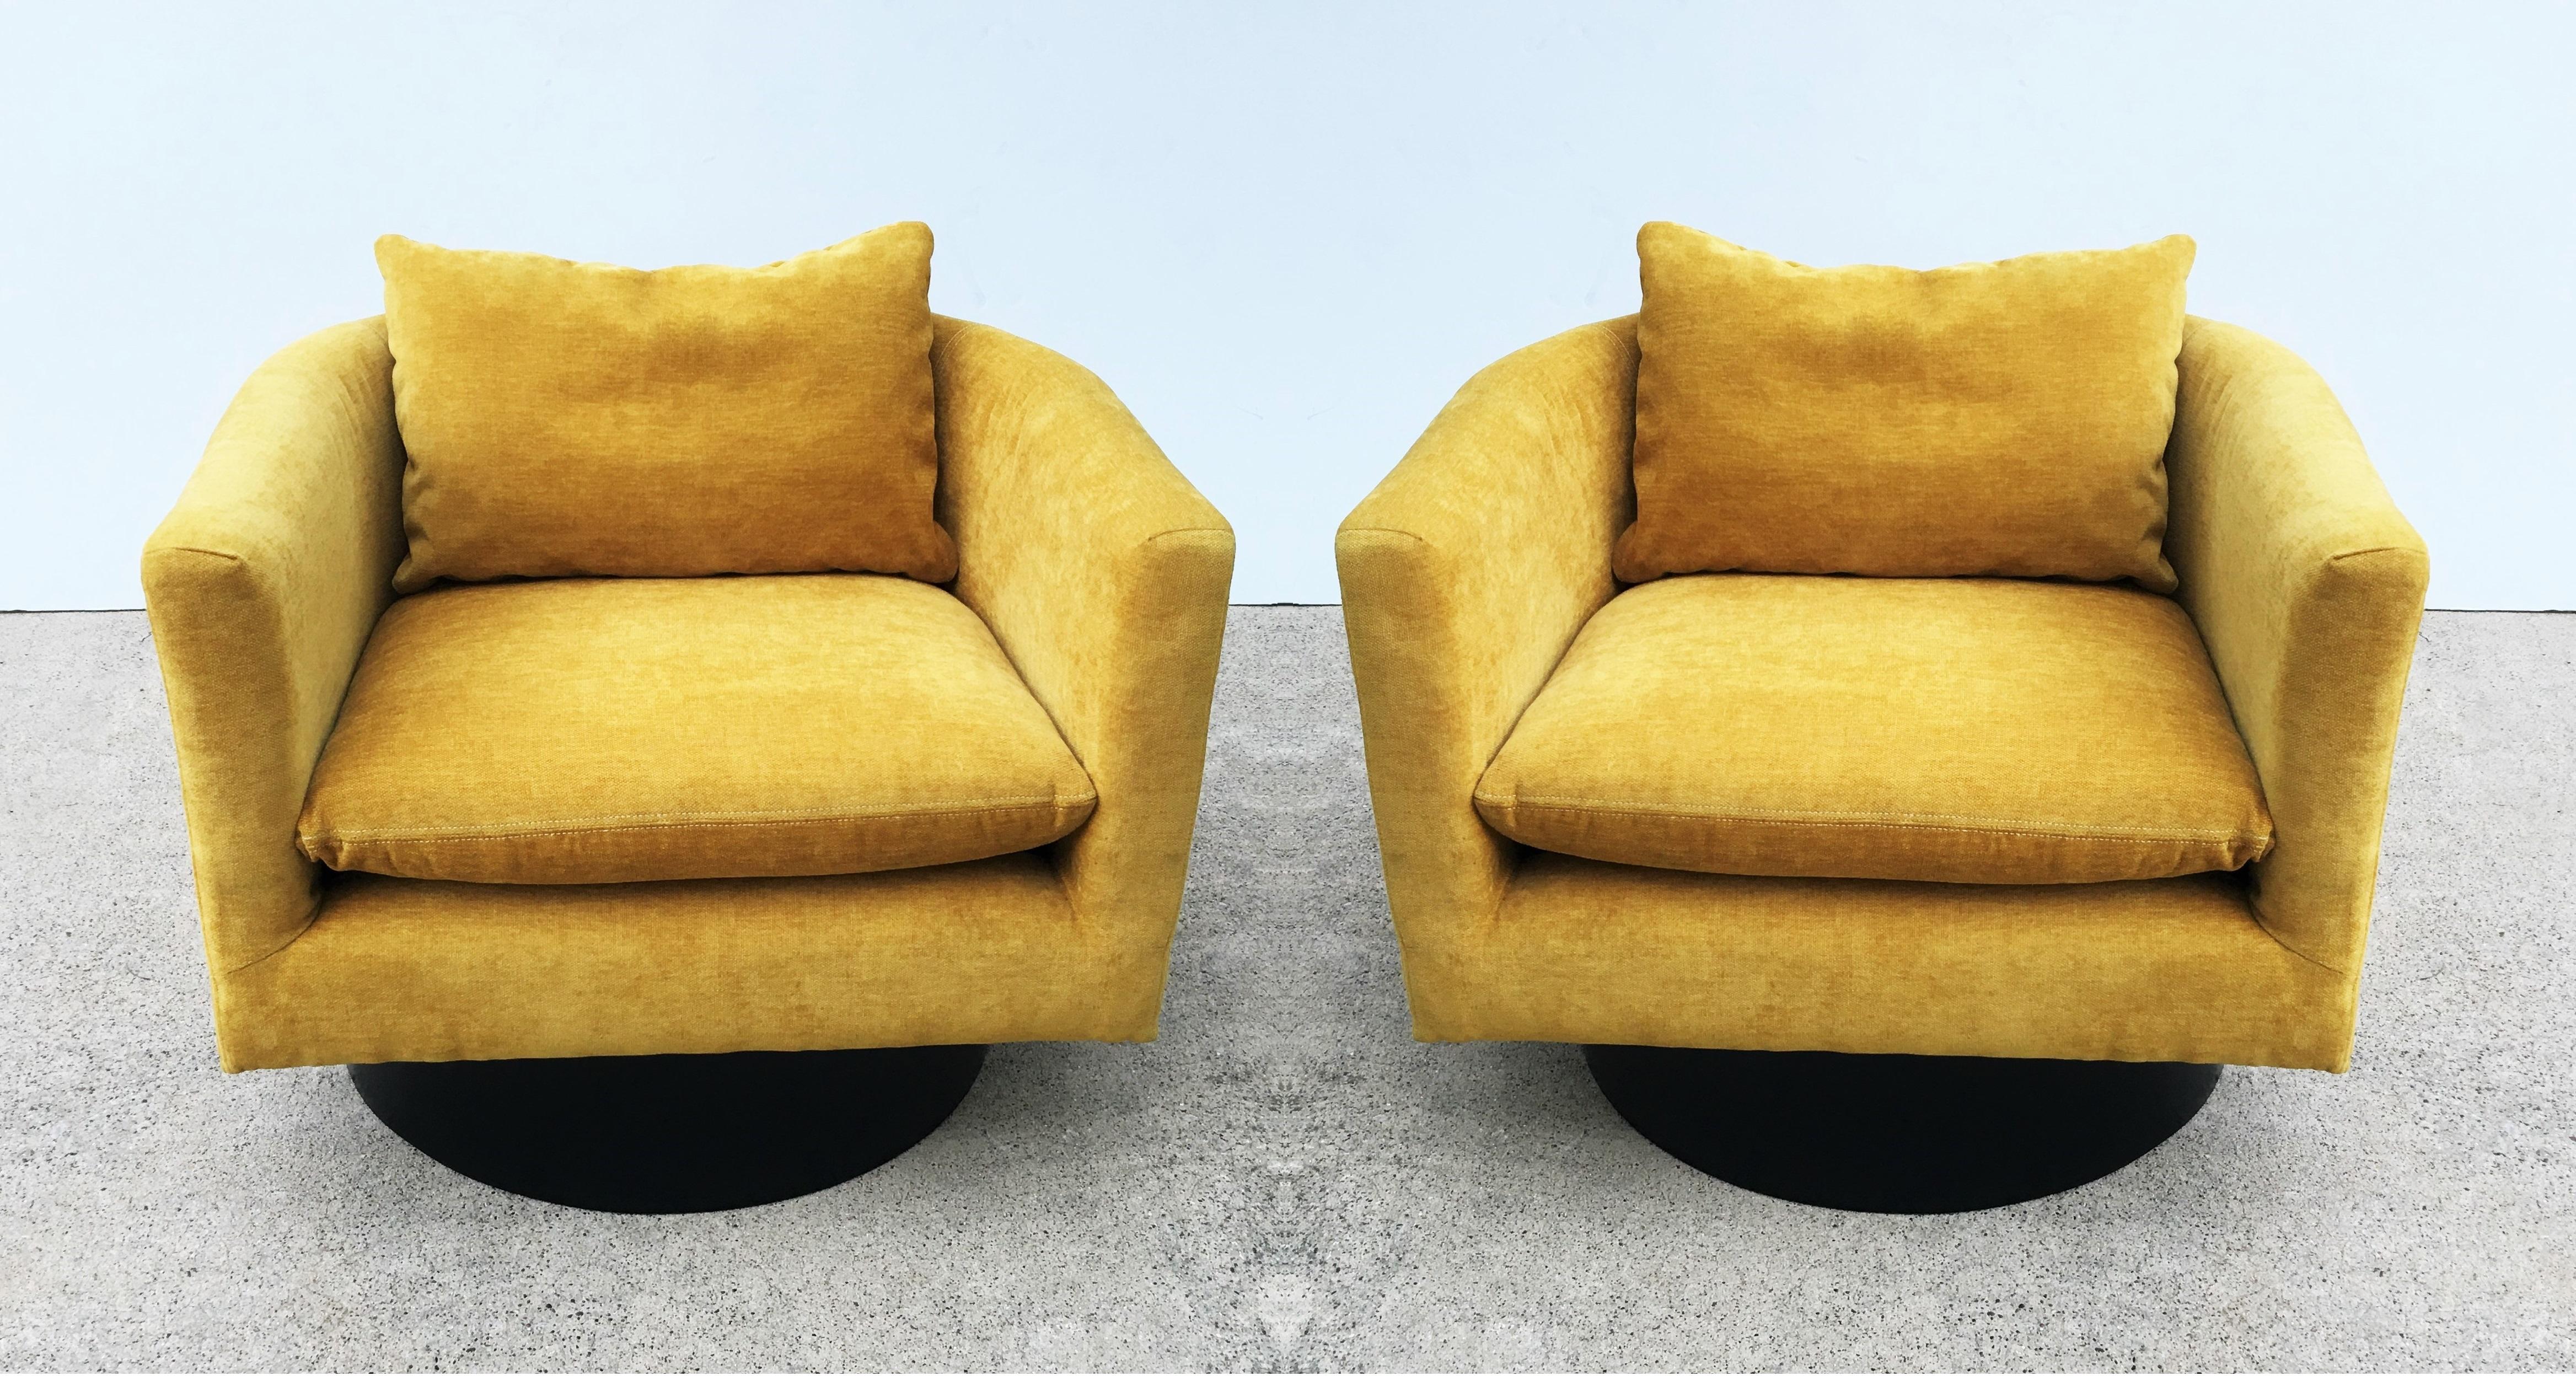 Belle paire de fauteuils pivotants très inhabituels conçus par Milo Baughman, vers les années 1960. L'un des principaux concepteurs de meubles modernes du XXe siècle. Ses meubles sont la quintessence du bon design. Profitez d'un confort luxueux en